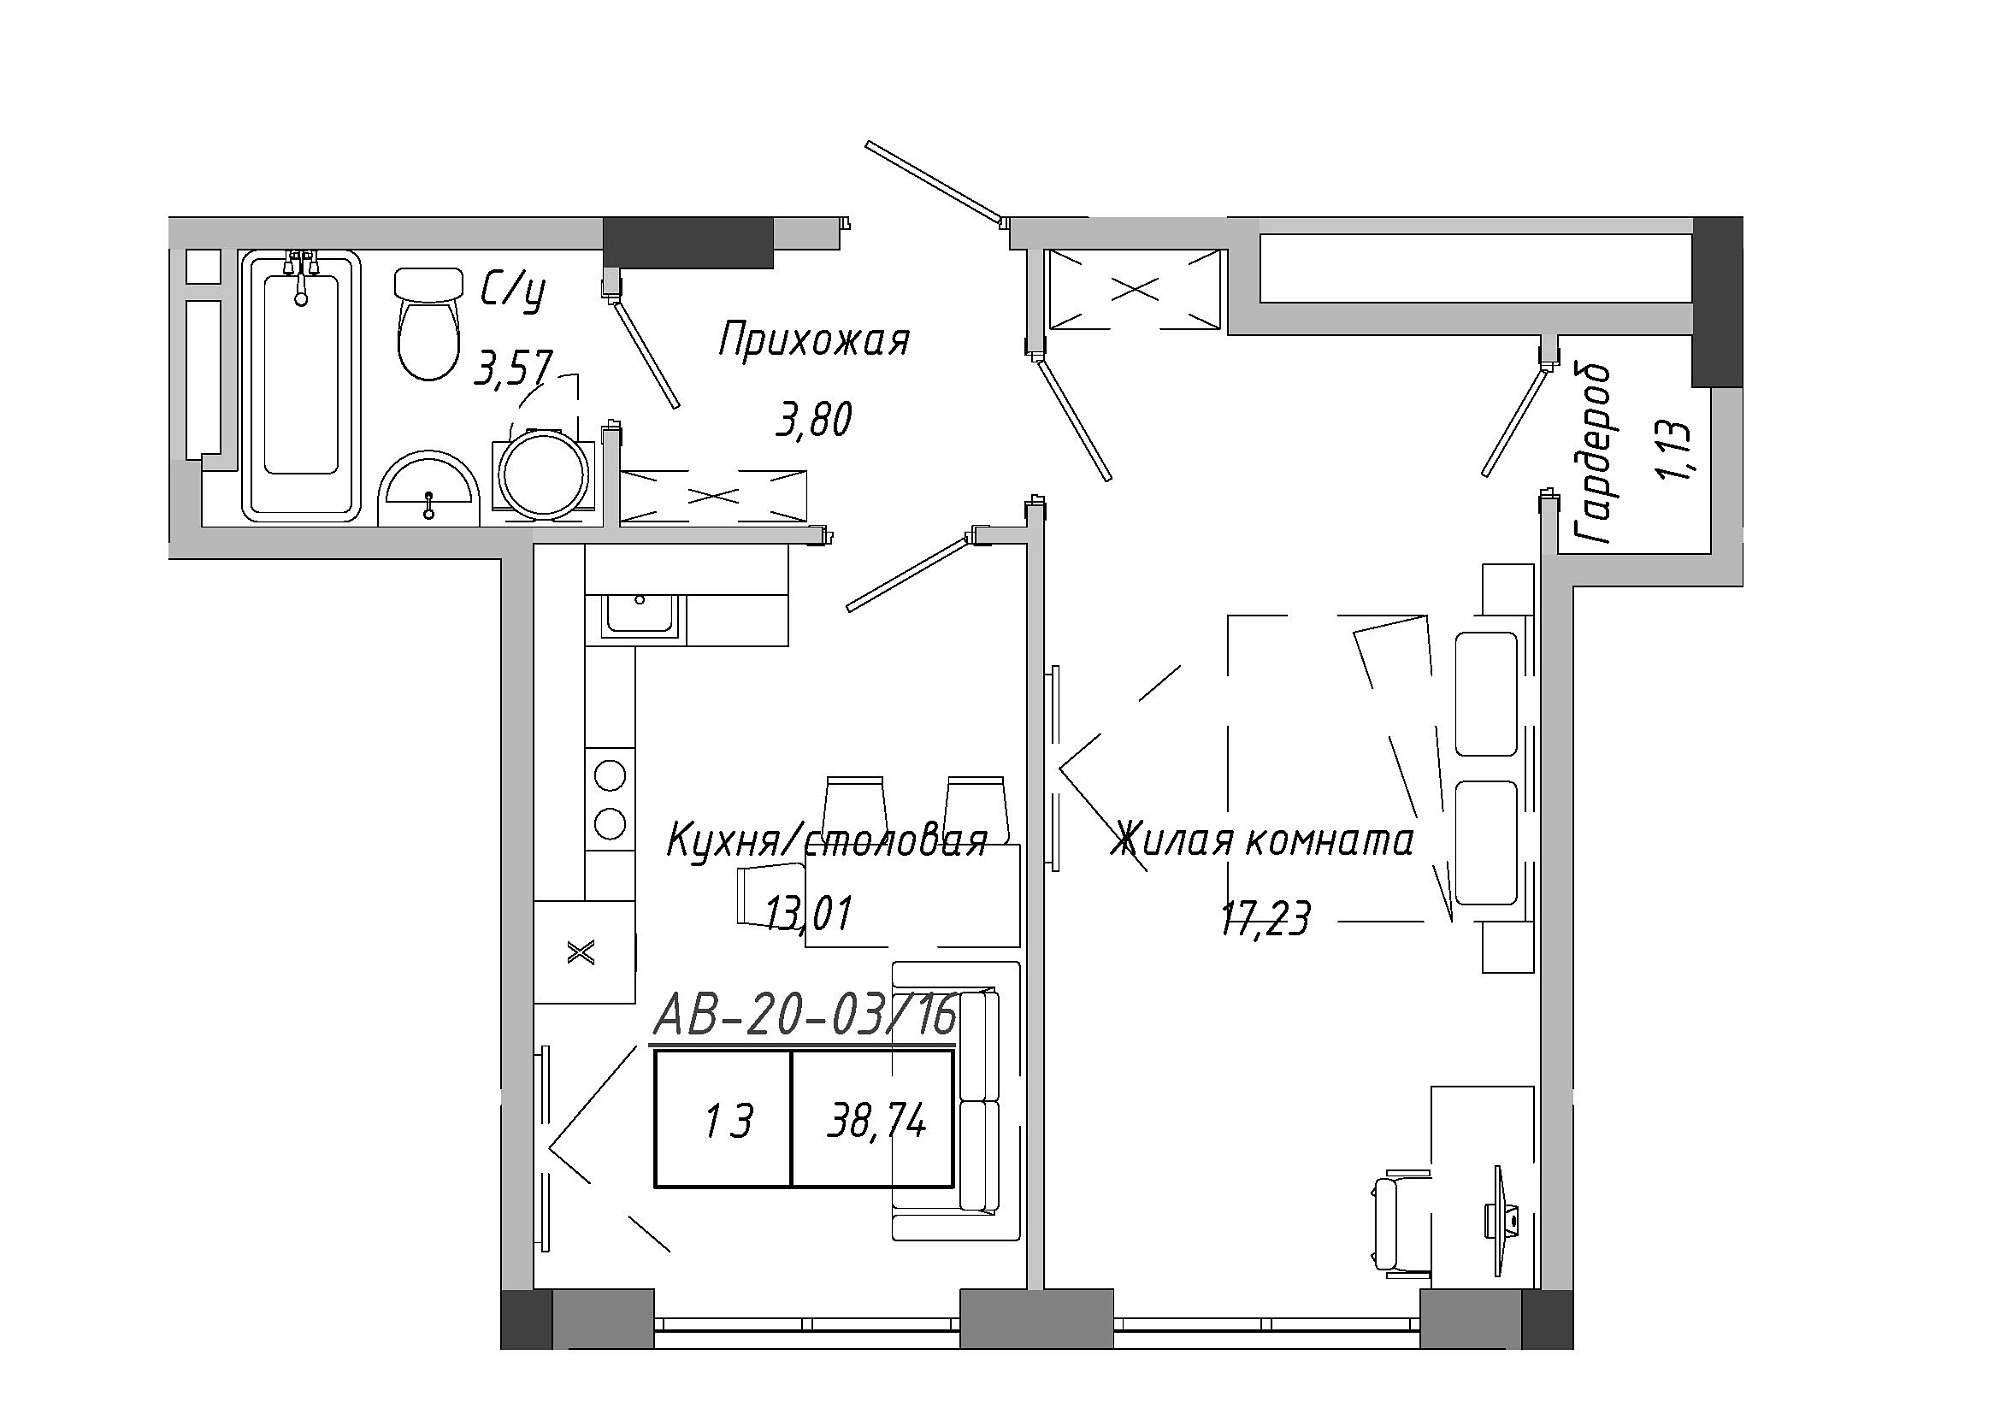 Планування 1-к квартира площею 38.74м2, AB-20-03/00016.